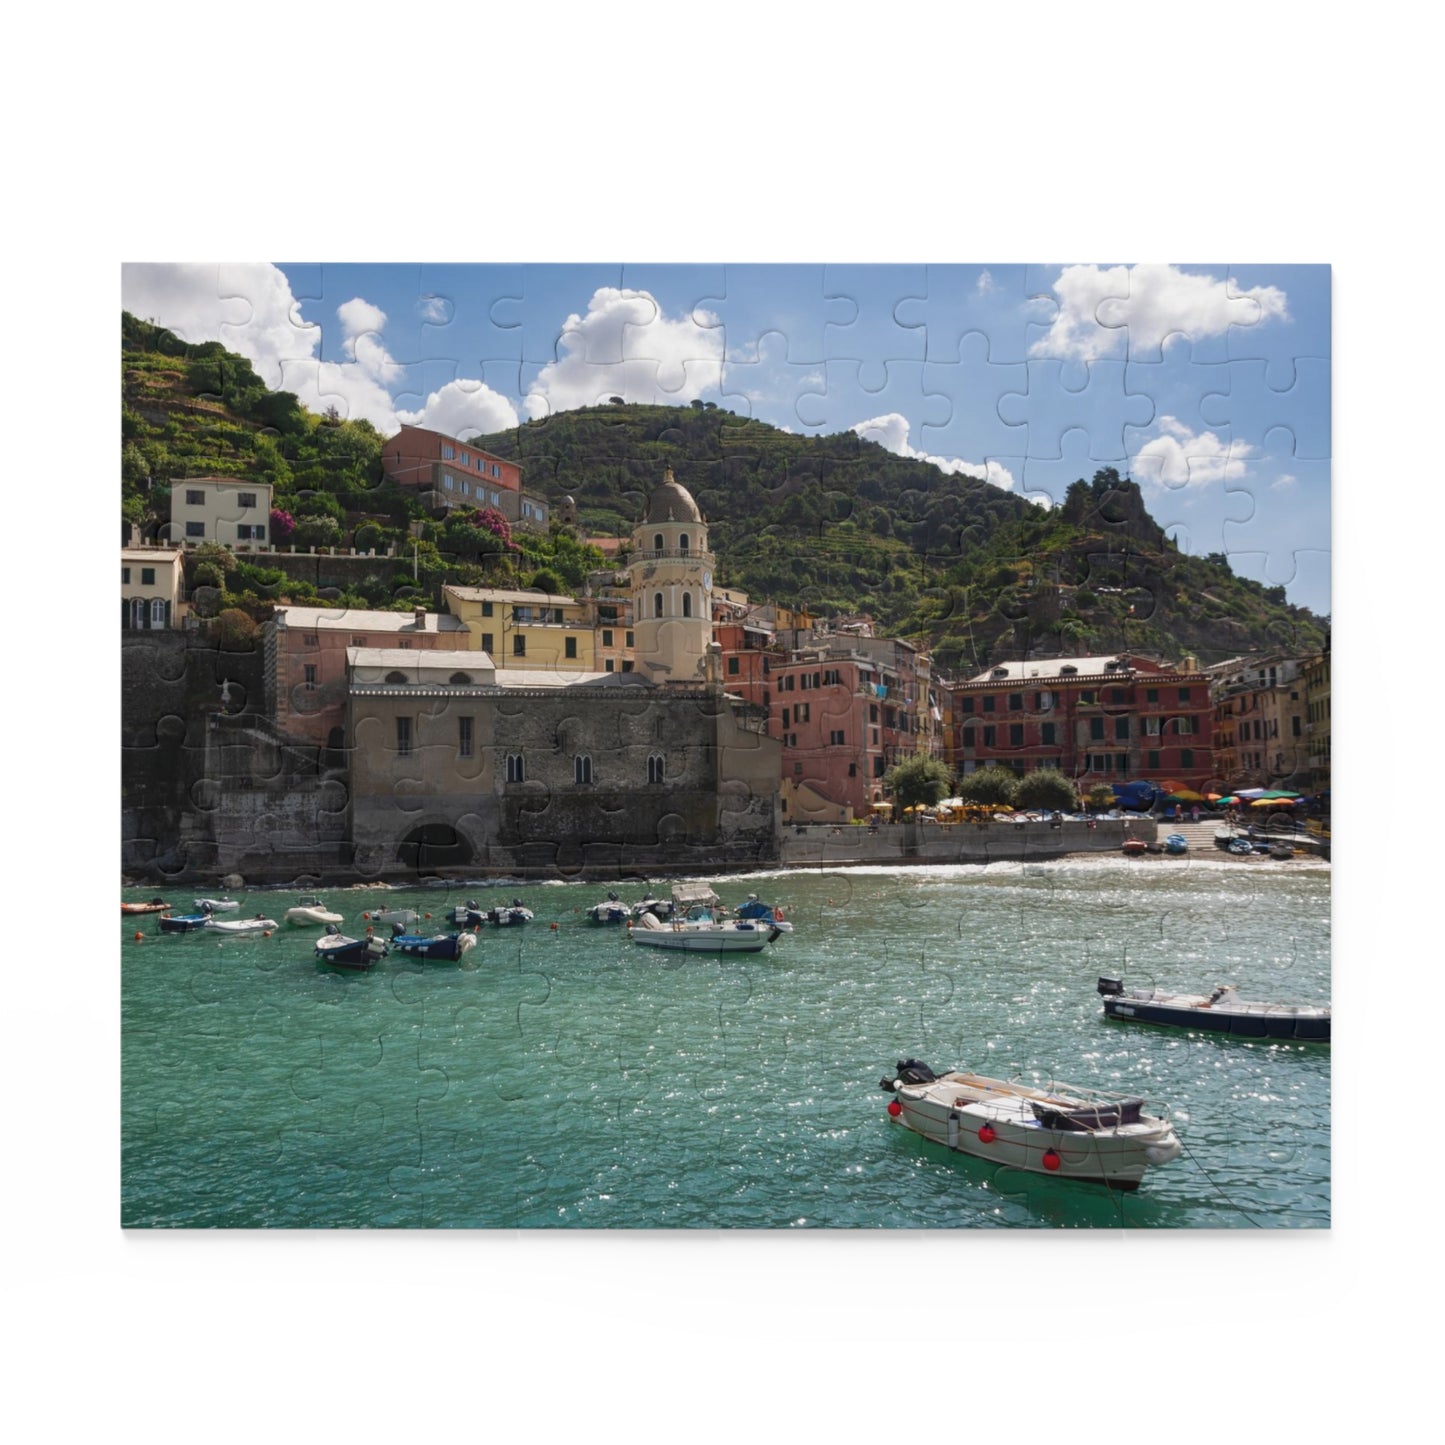 120 Piece Puzzle - Cinque Terre Italy - Leah Ramuglia Photography